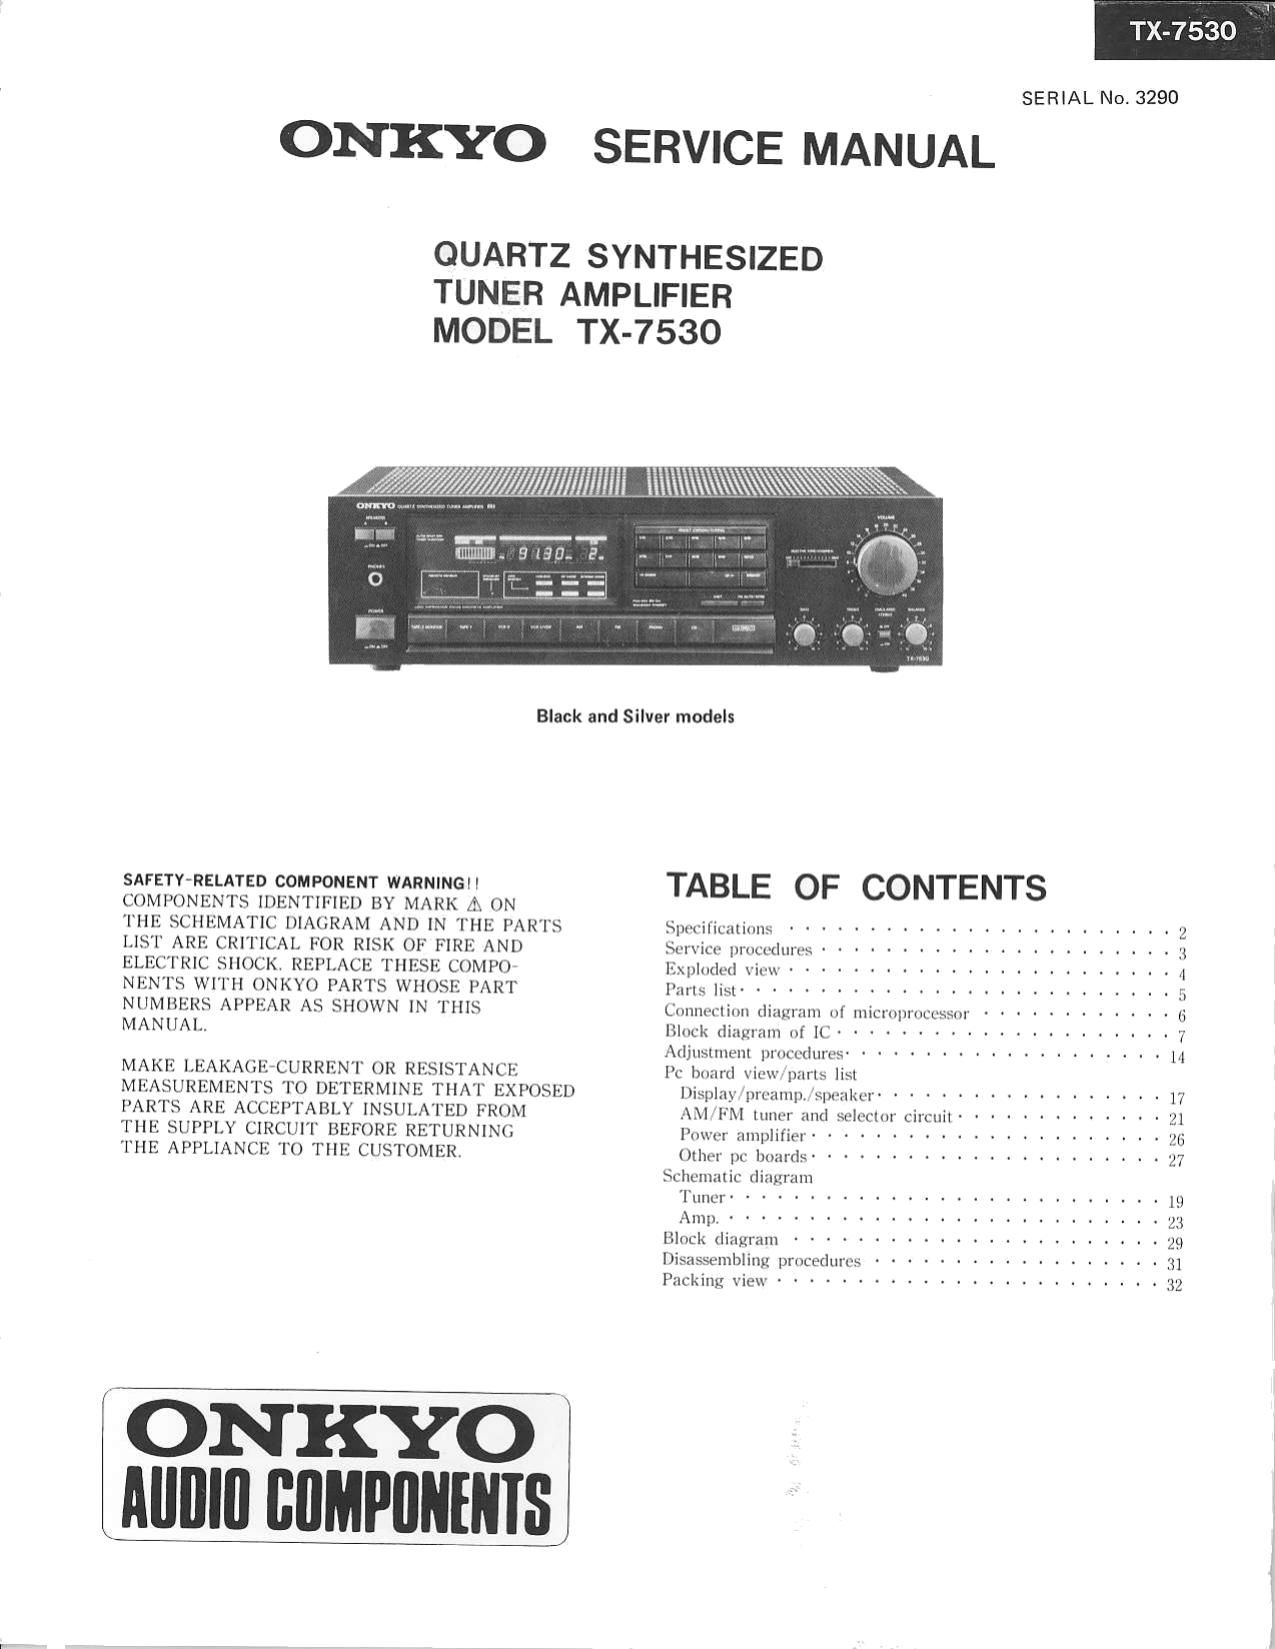 Onkyo TX 7530 Service Manual